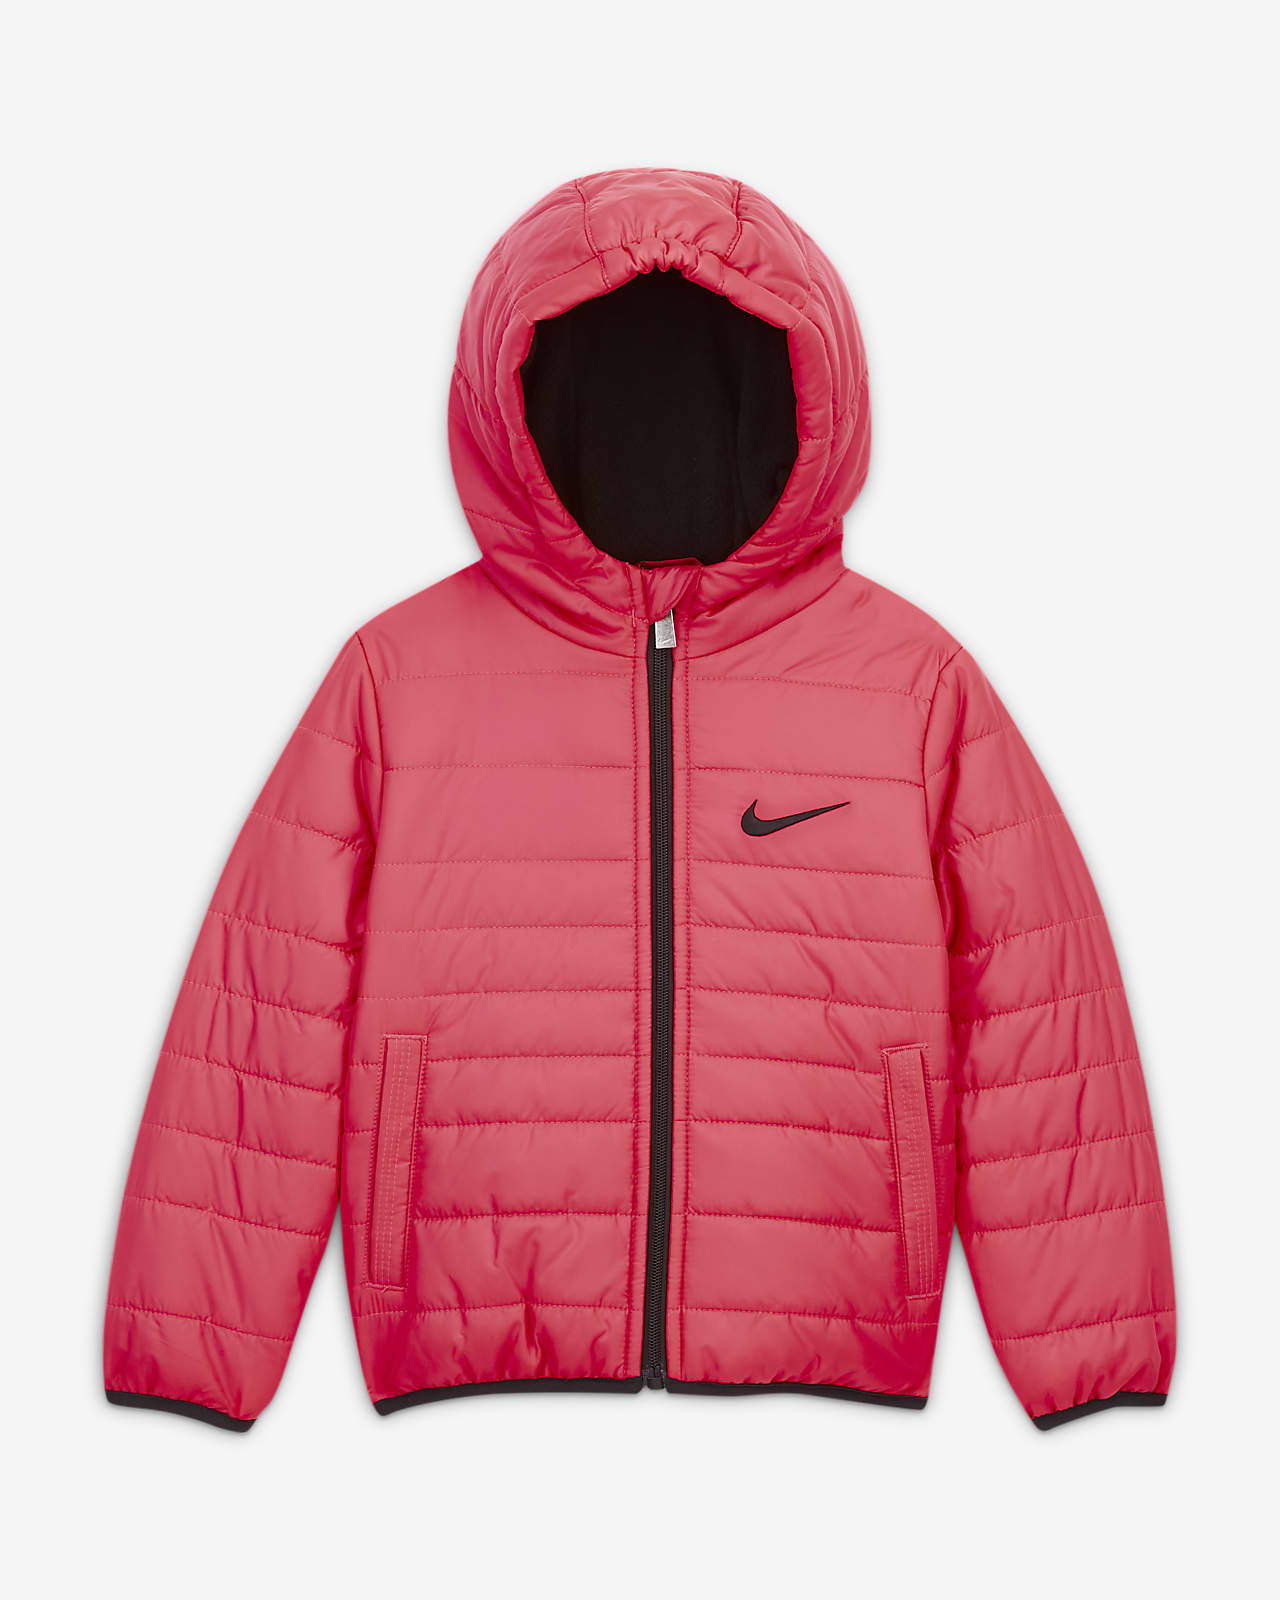 pink jacket nike